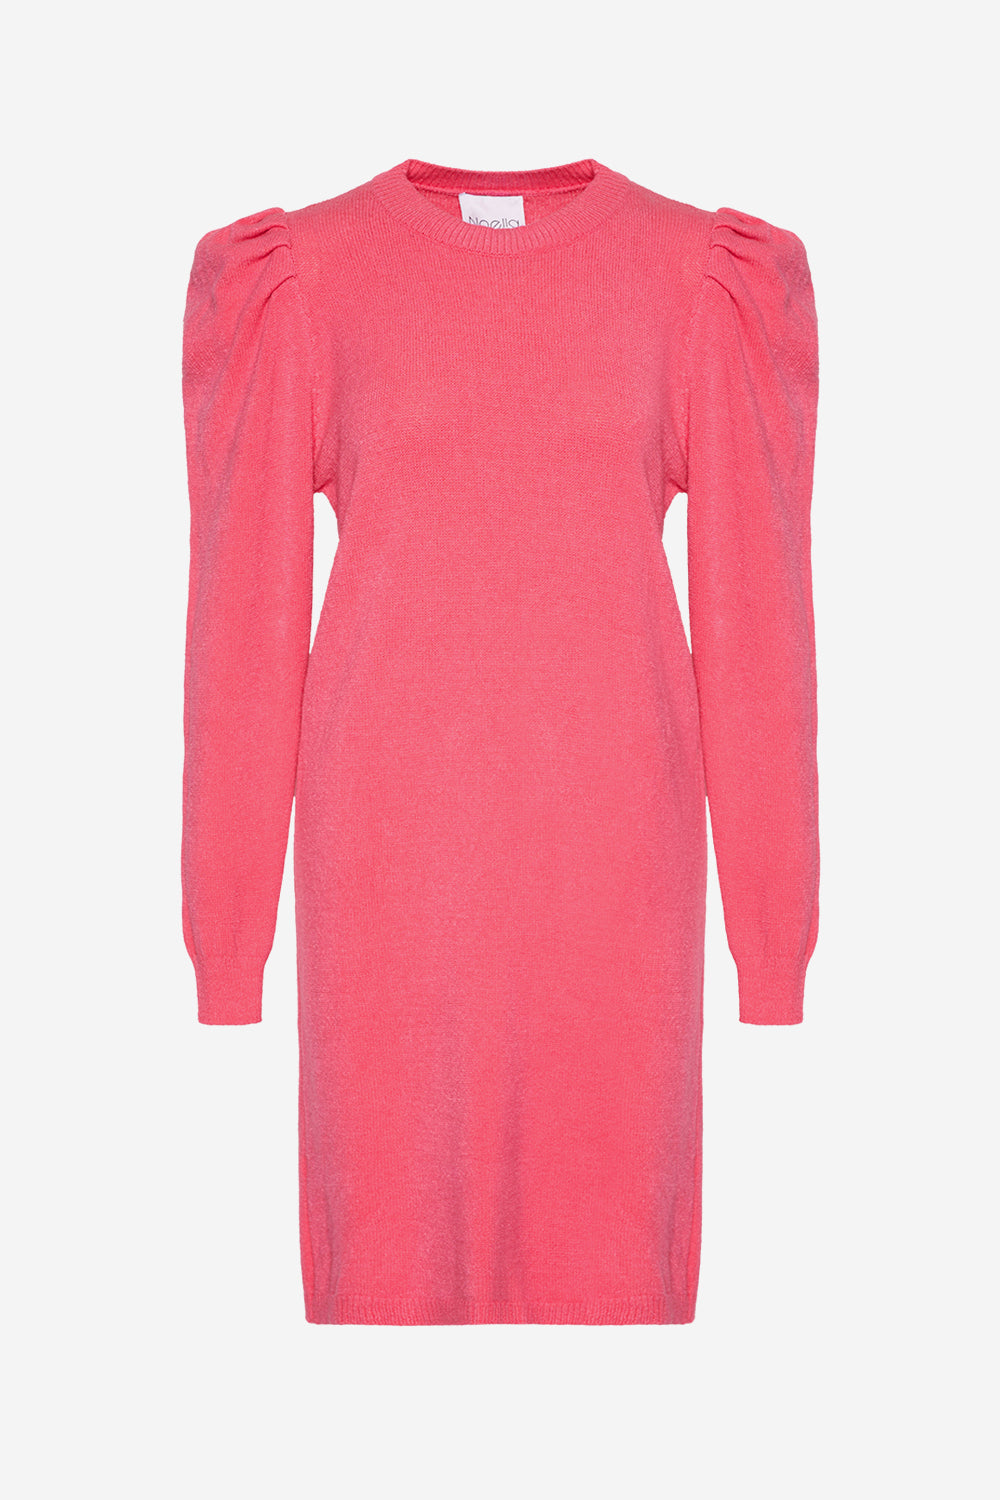 Pax Knit Dress Pink